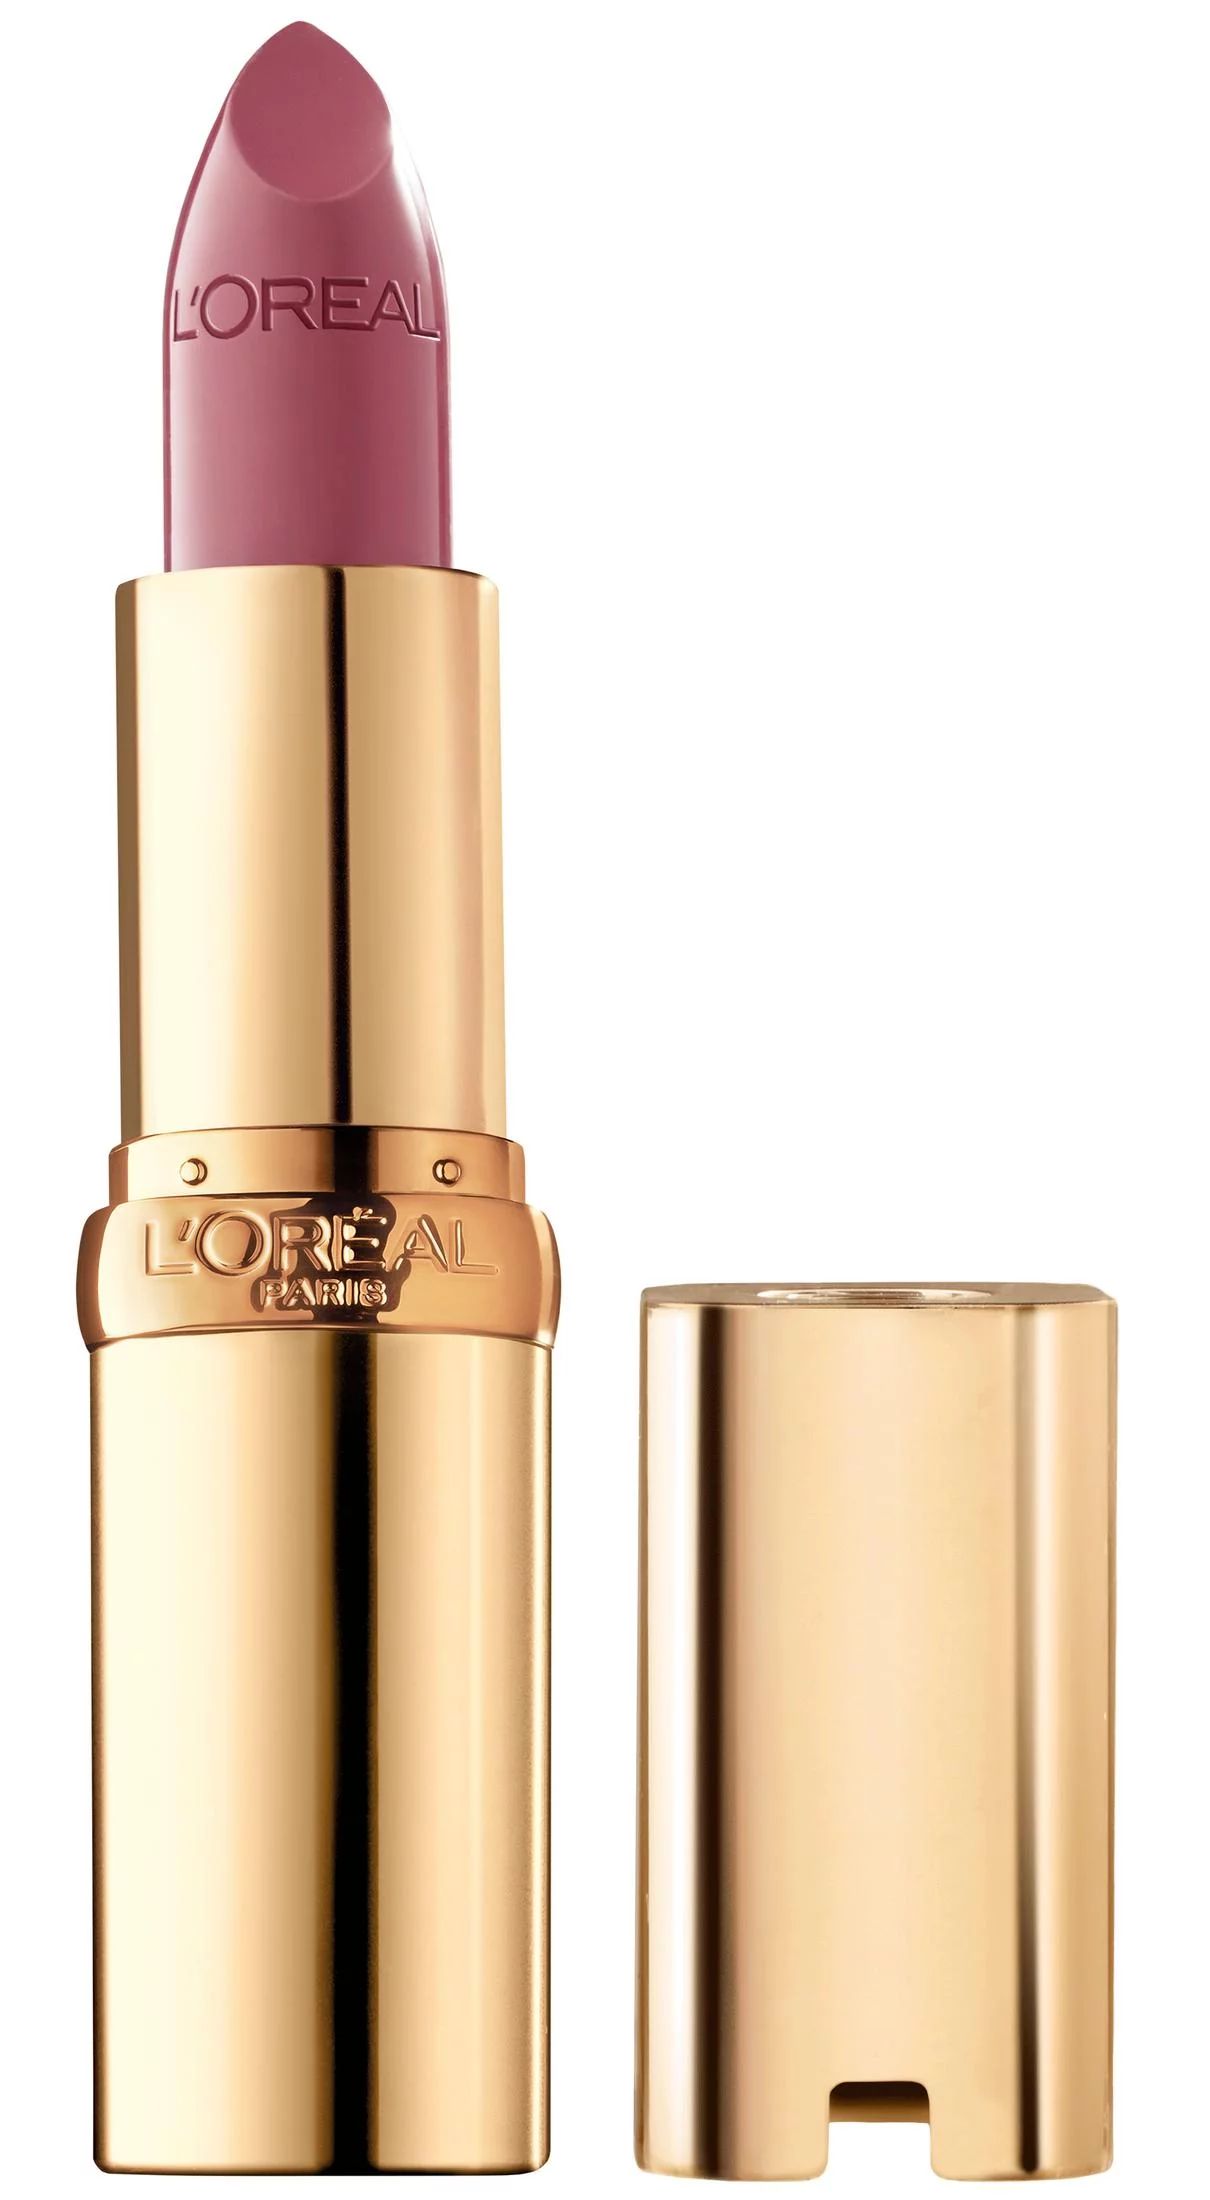 L'Oreal Paris Colour Riche Original Satin Lipstick for Moisturized Lips, Saucy Mauve | Walmart (US)